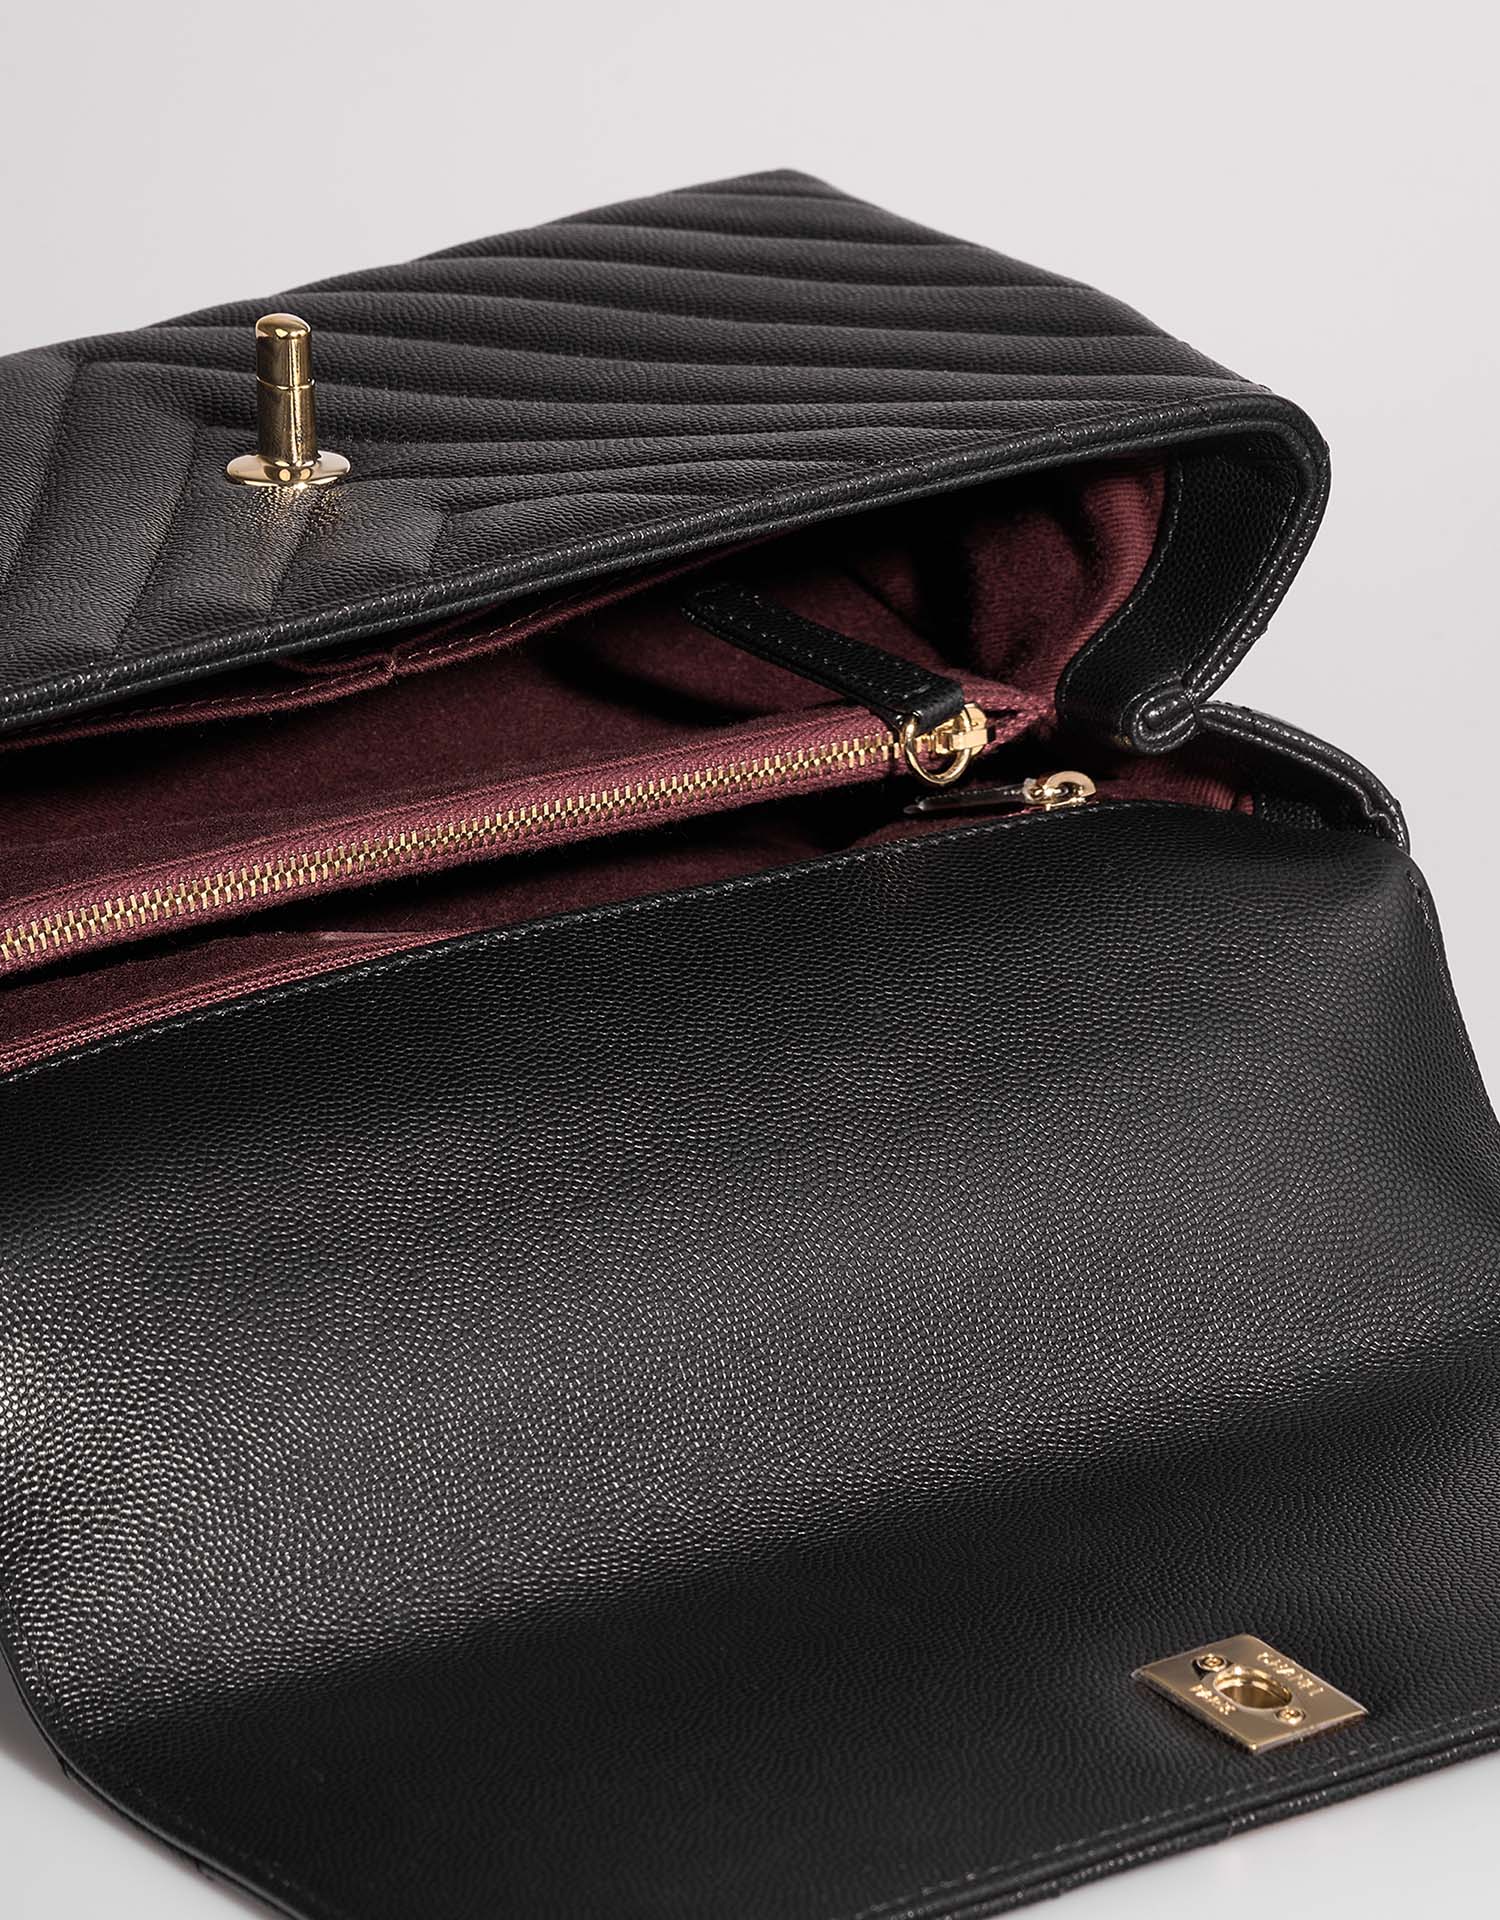 Chanel TimelessHandle Medium Black Inside | Vendre votre sac de créateur sur Saclab.com